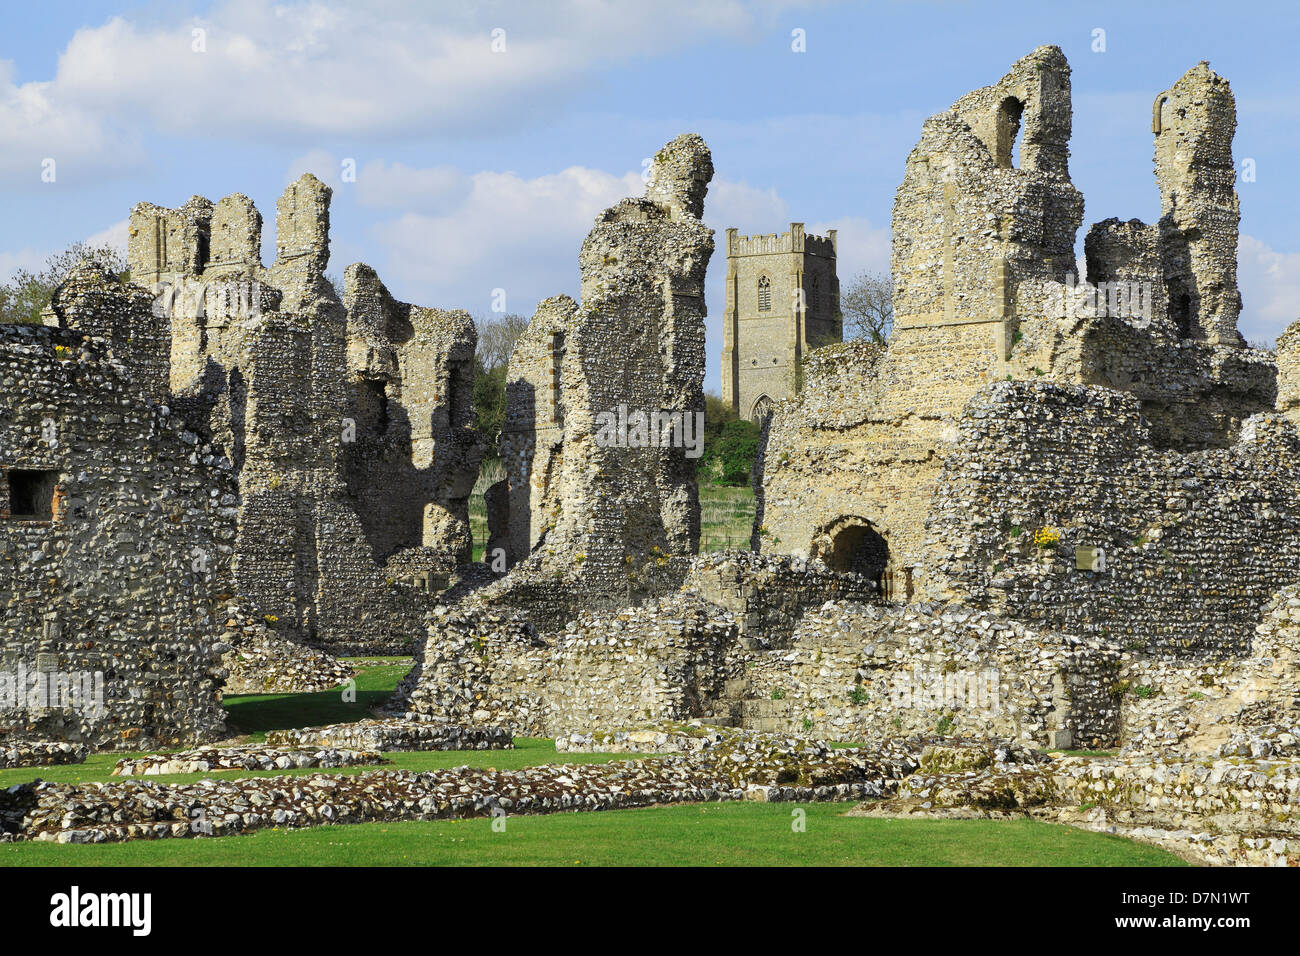 Castle Acre Priory, Norfolk, rovine monastiche, England, Regno Unito, cluniacense monastero medievale, Priorati inglese Foto Stock